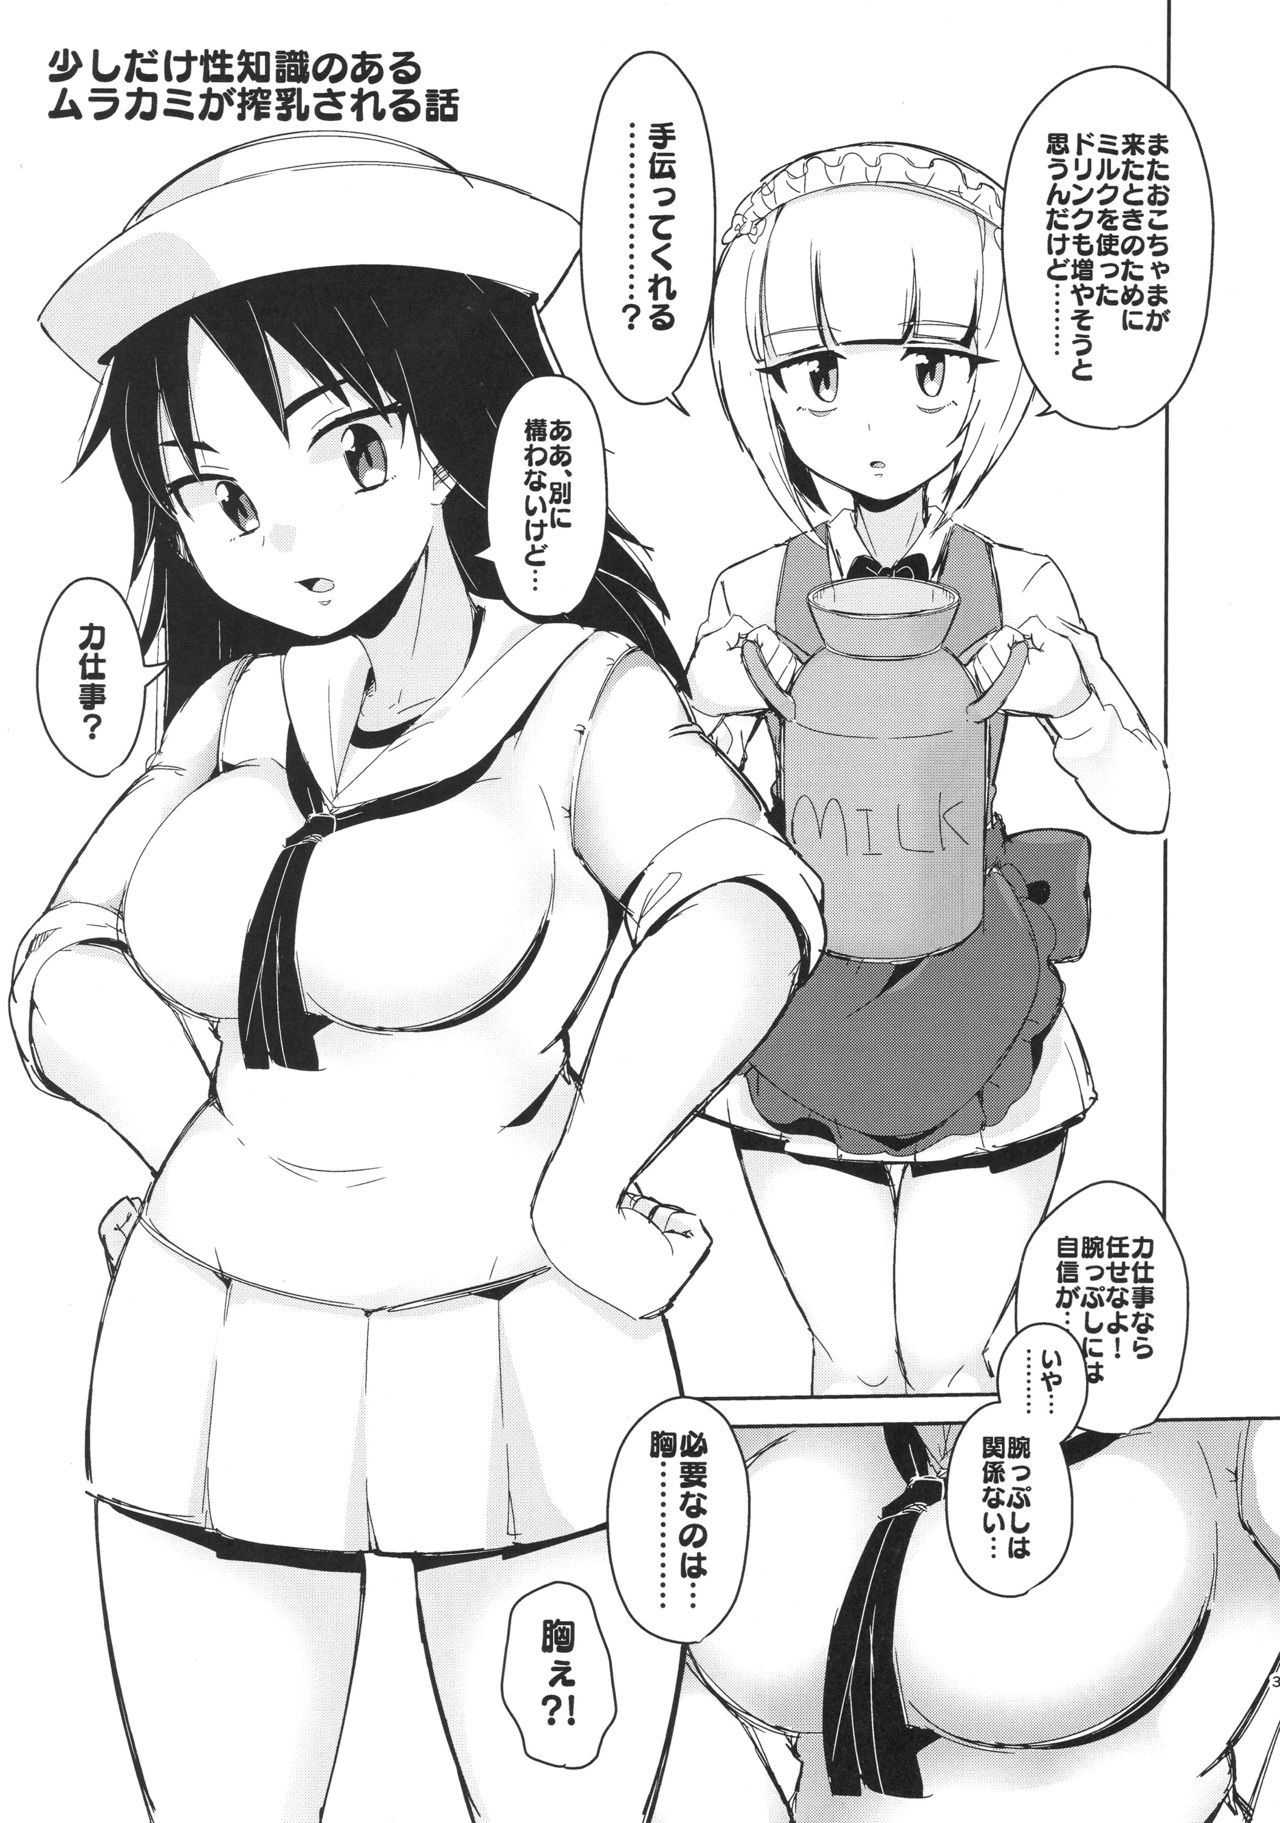 (Panzer Vor! 15) [Chabane Ninja (Happamushi)] Onii-san-tachi wa Koko de Murakami no Oppai demo Nondenasai yo (Girls und Panzer) (ぱんっあ☆ふぉー!15) [ちゃばねにんじゃ (はっぱむし)] お兄さんたちはここでムラカミのおっぱいでも飲んでなさいよ (ガールズ&パンツァー)